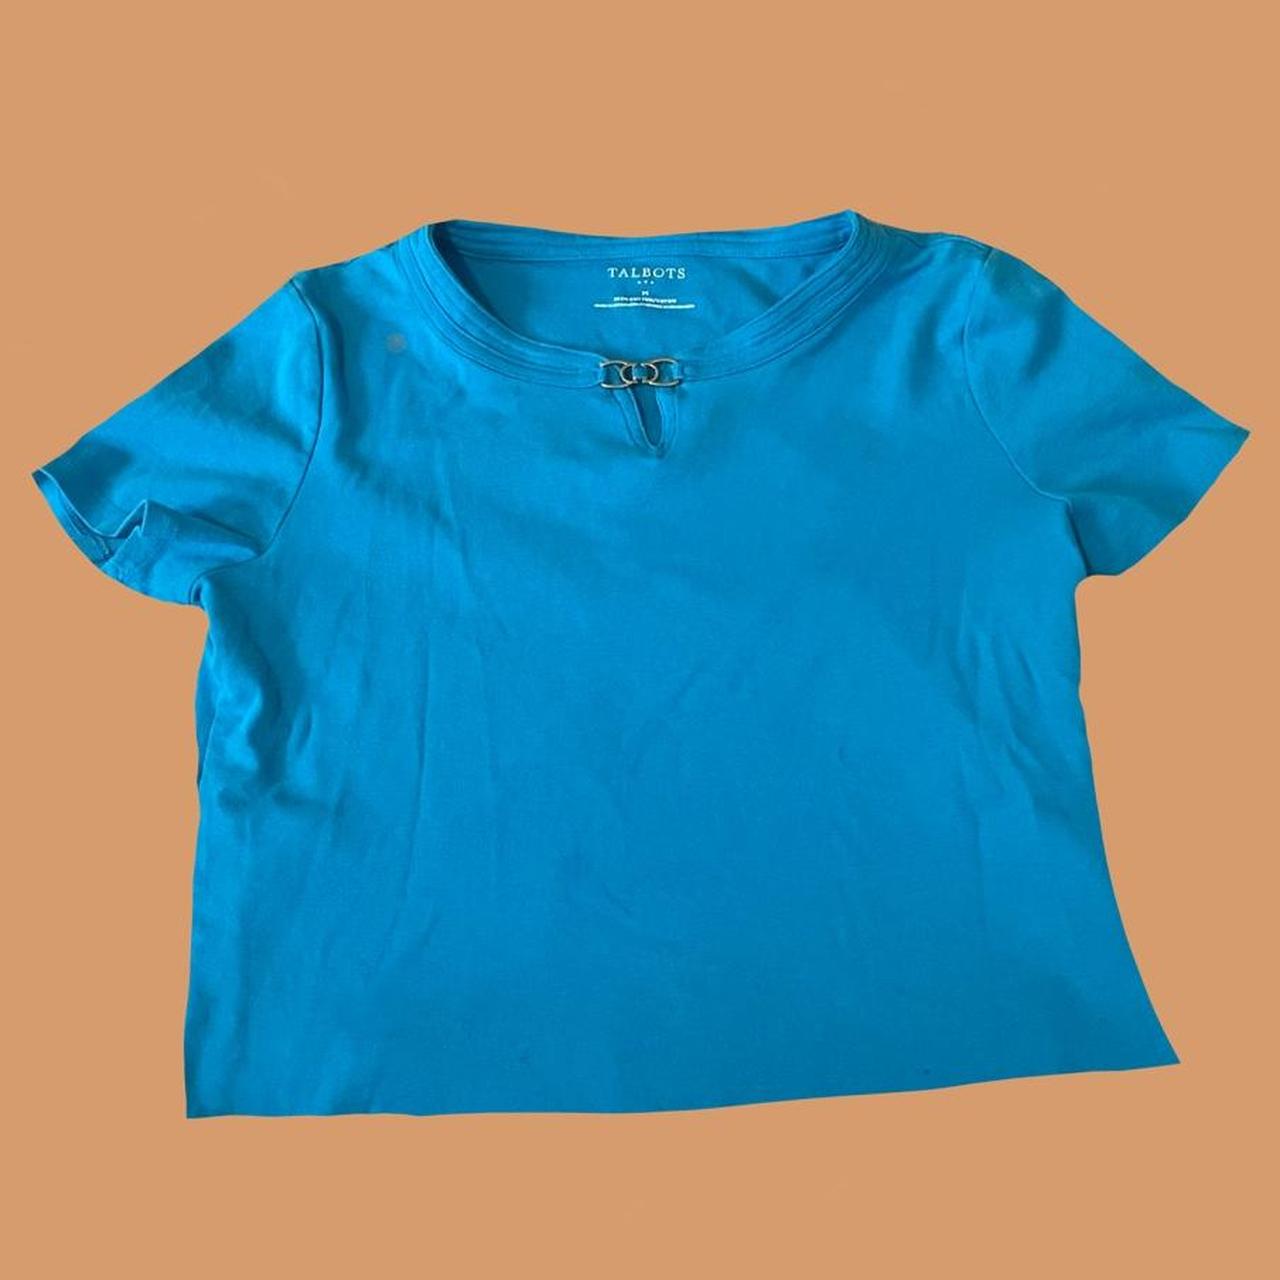 Talbots Women's Blue and Gold Shirt | Depop